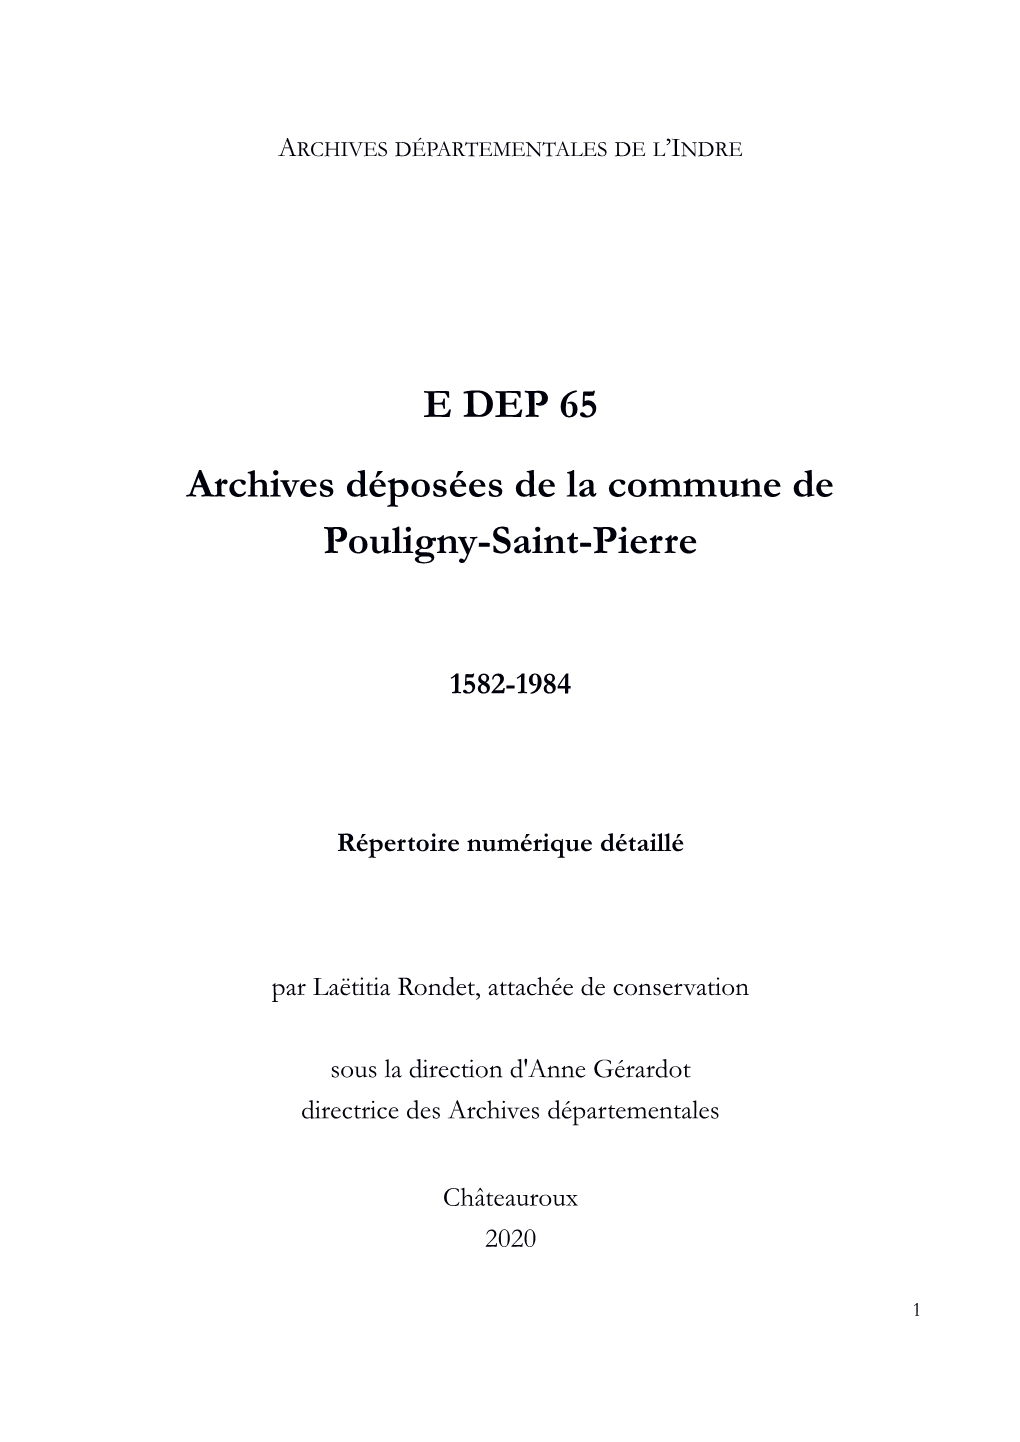 E DEP 65 Archives Déposées De La Commune De Pouligny-Saint-Pierre